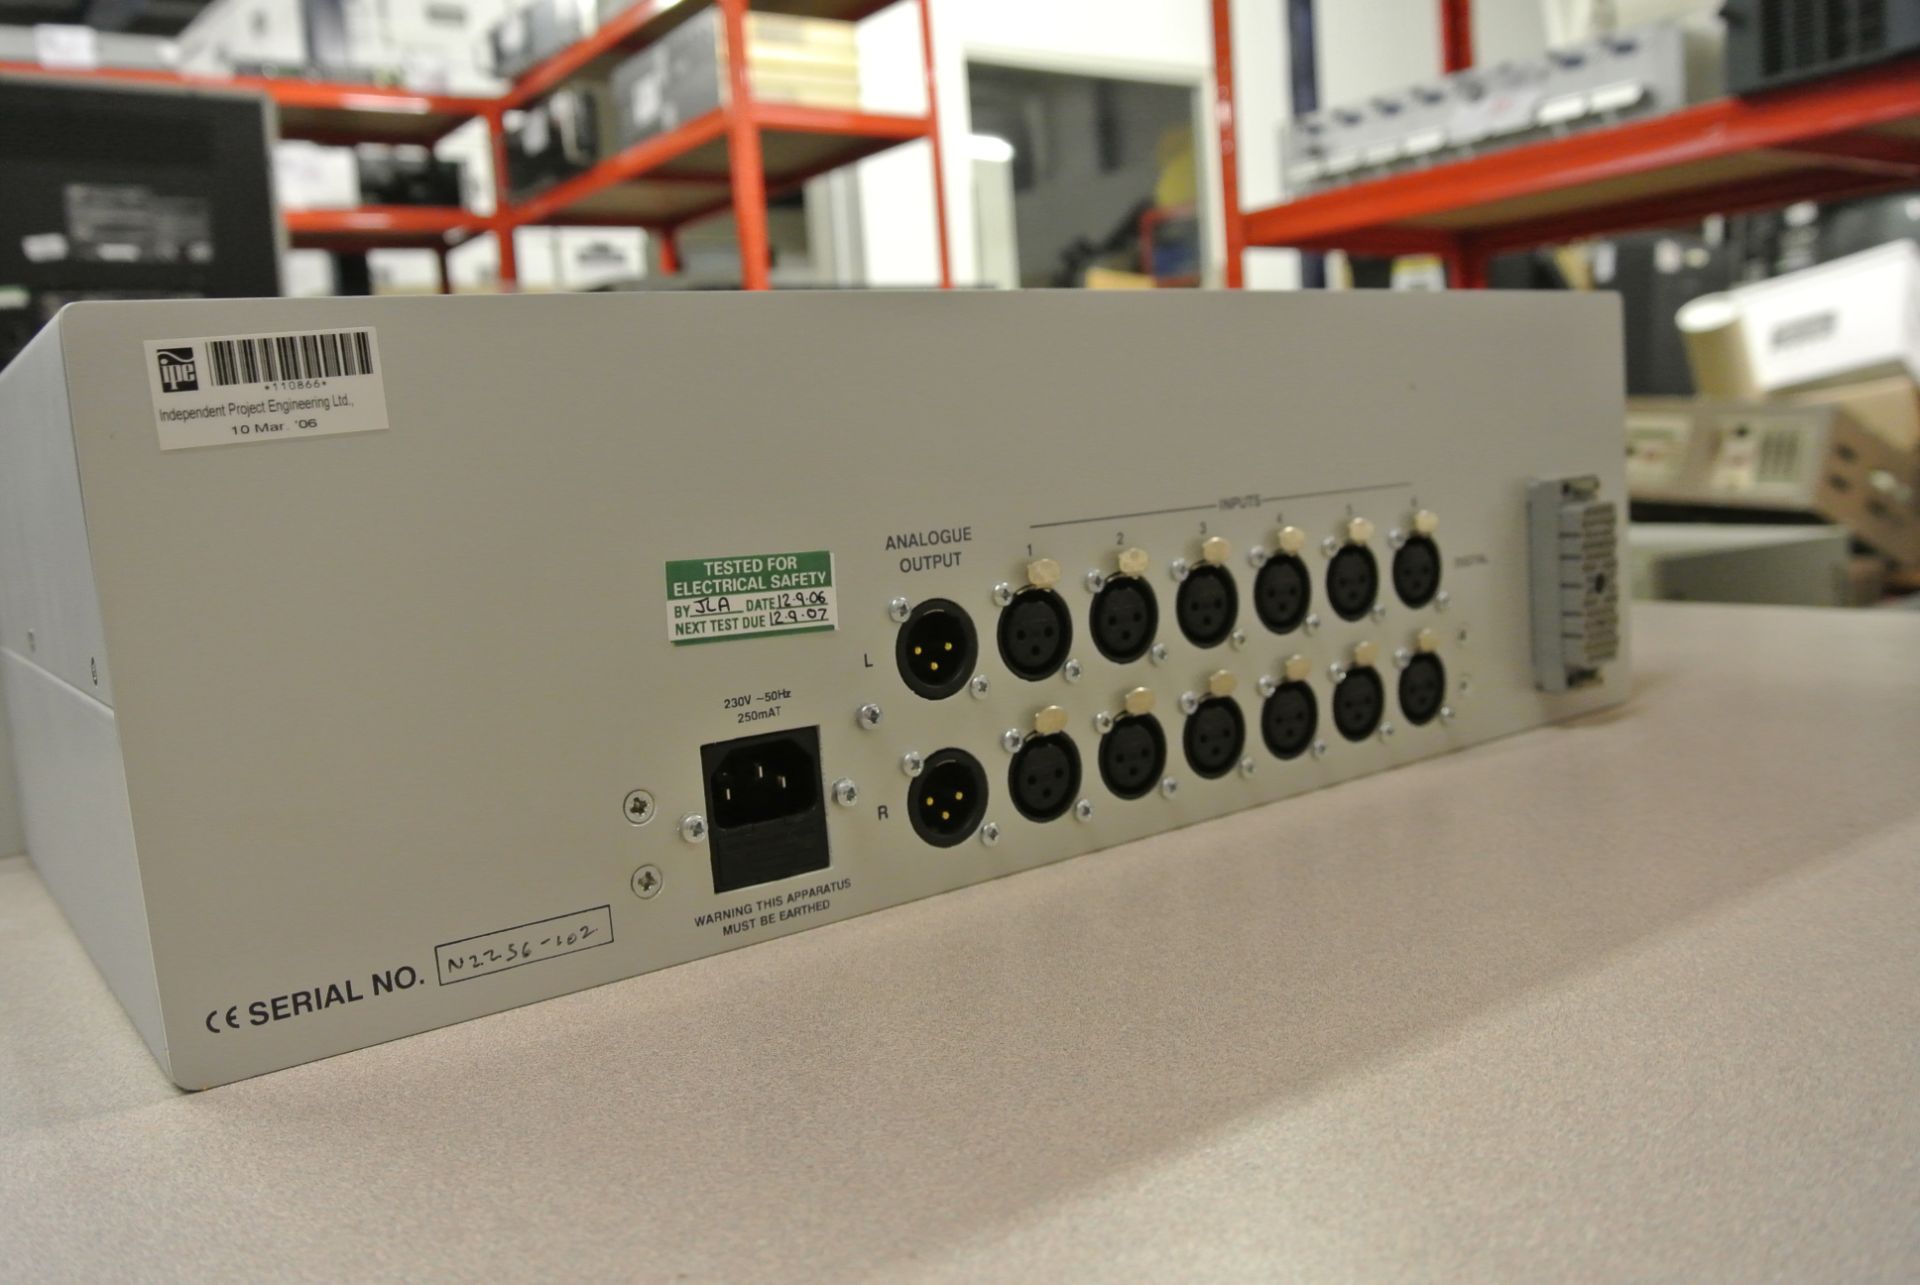 AUDIONICS SC1-D Digital Audio Monitoring Unit - 2U 19' Rack Mount - Image 5 of 6